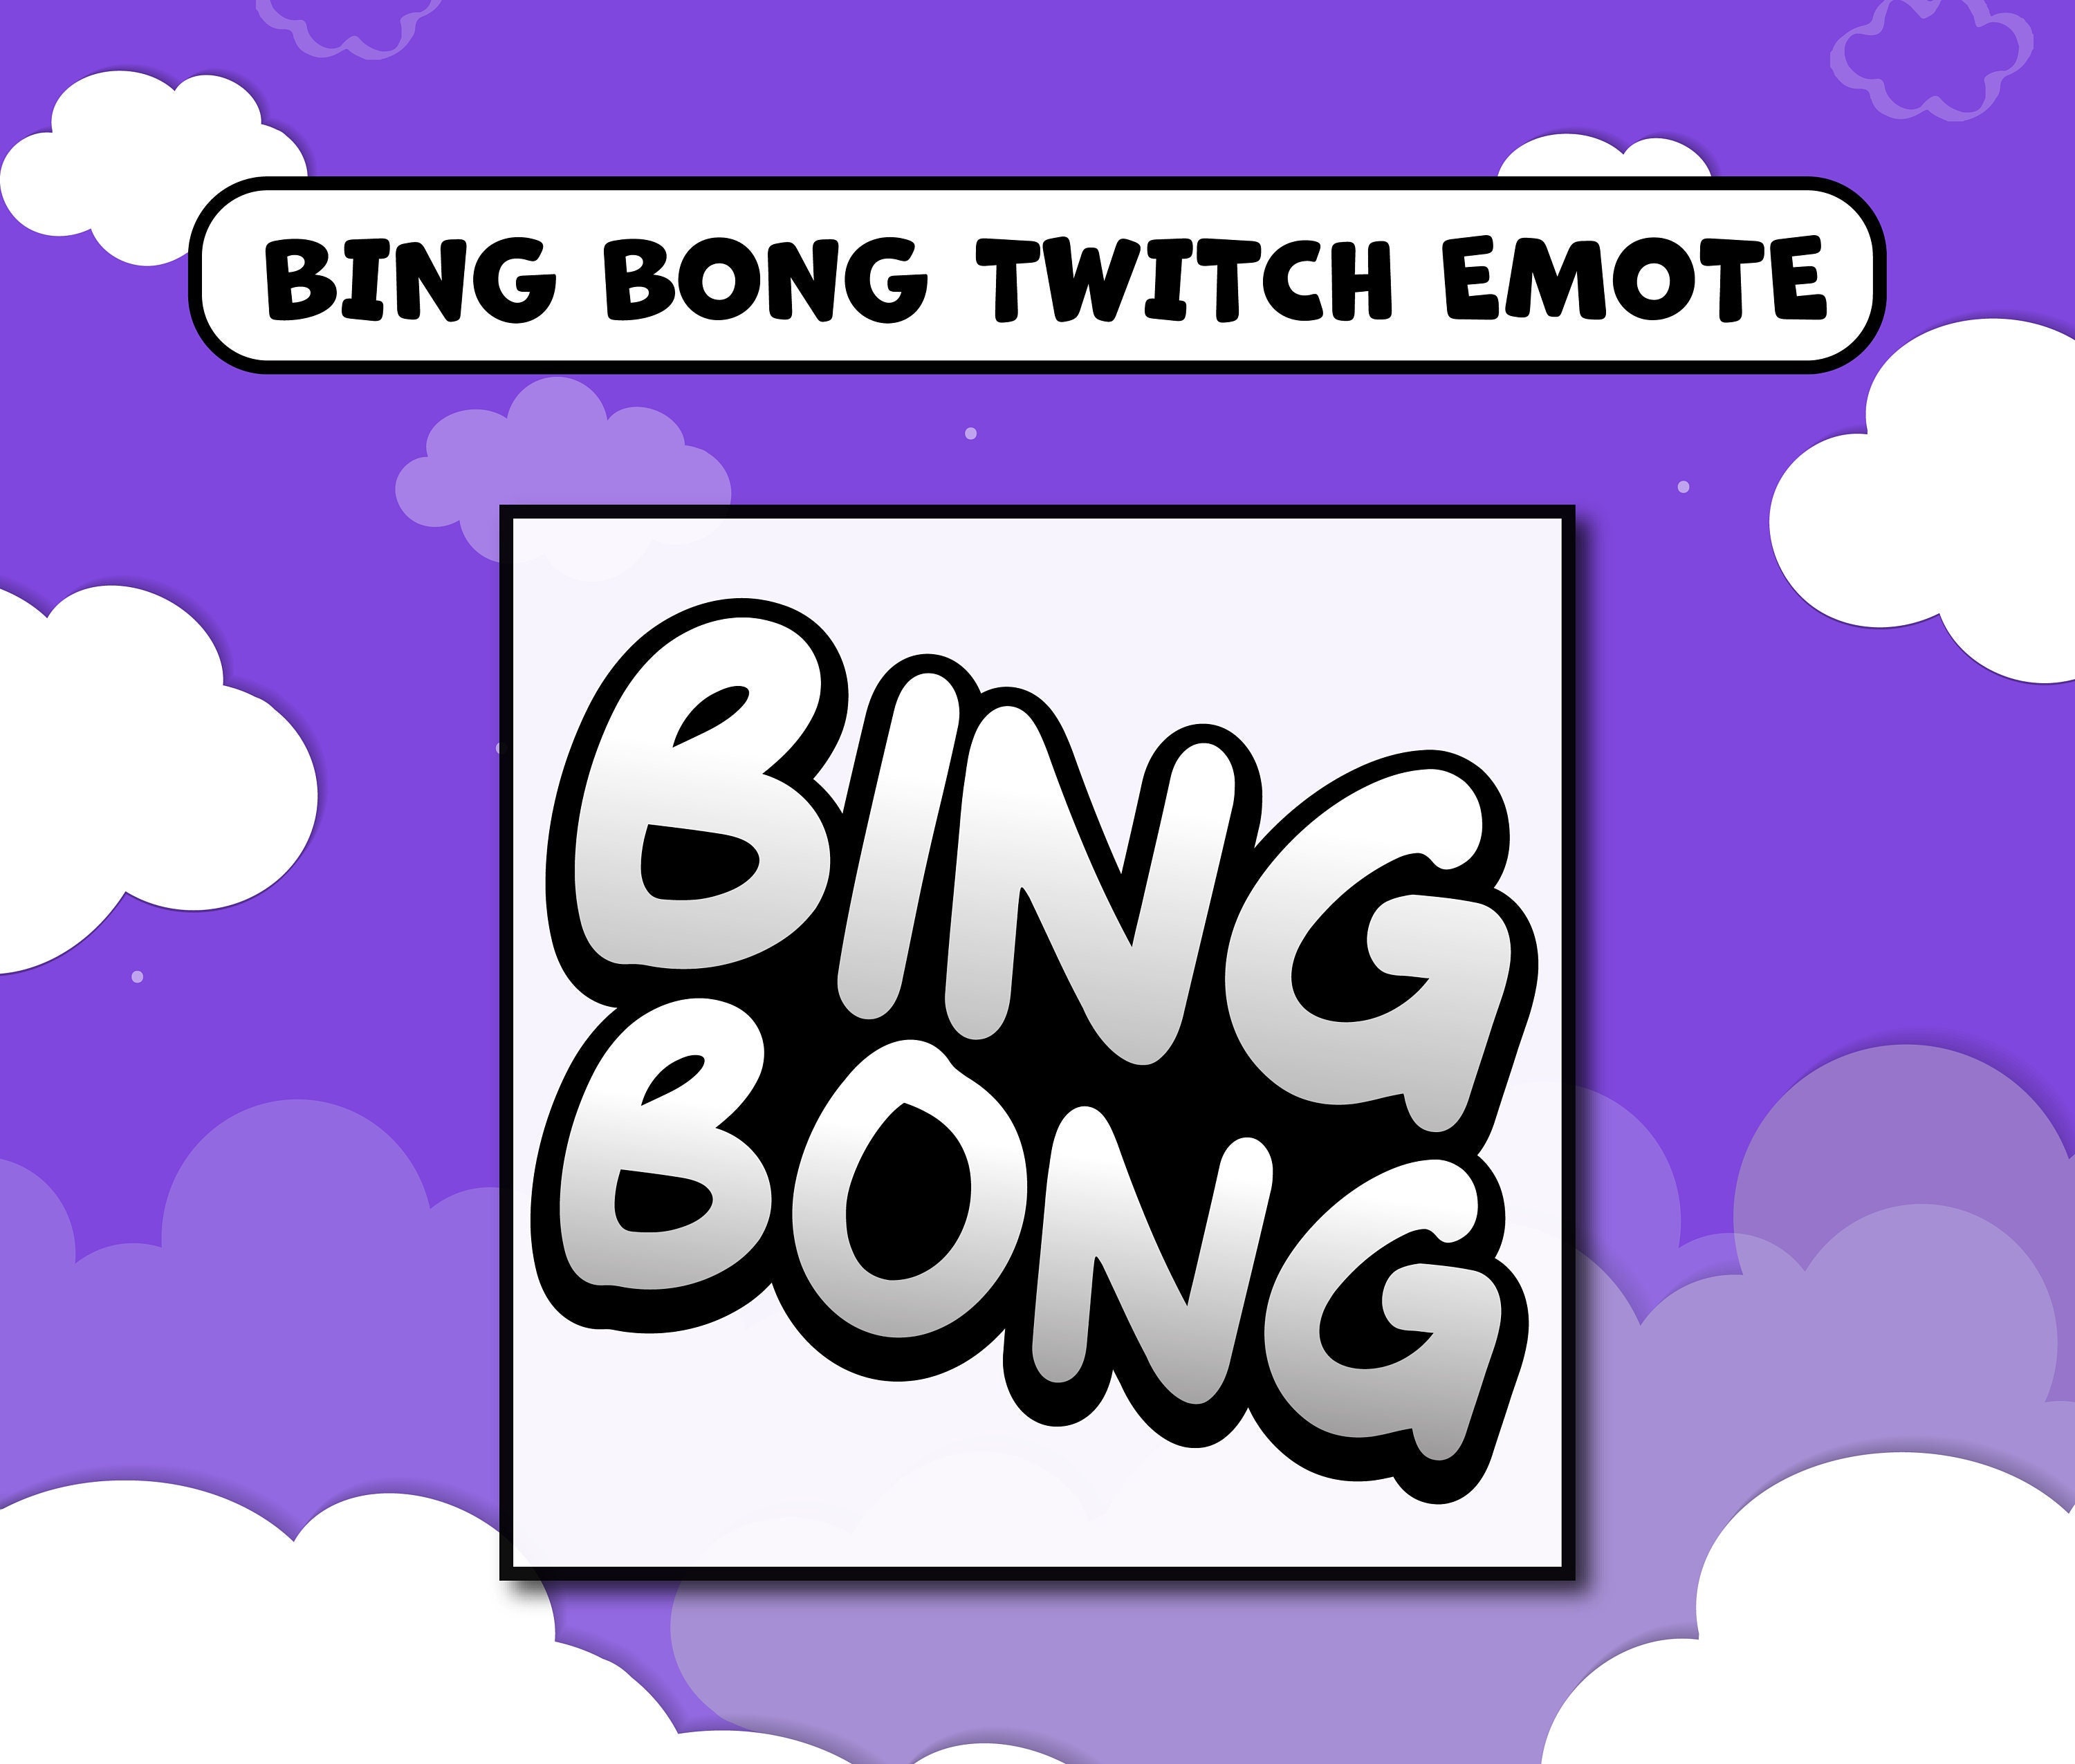 Bing bing bong